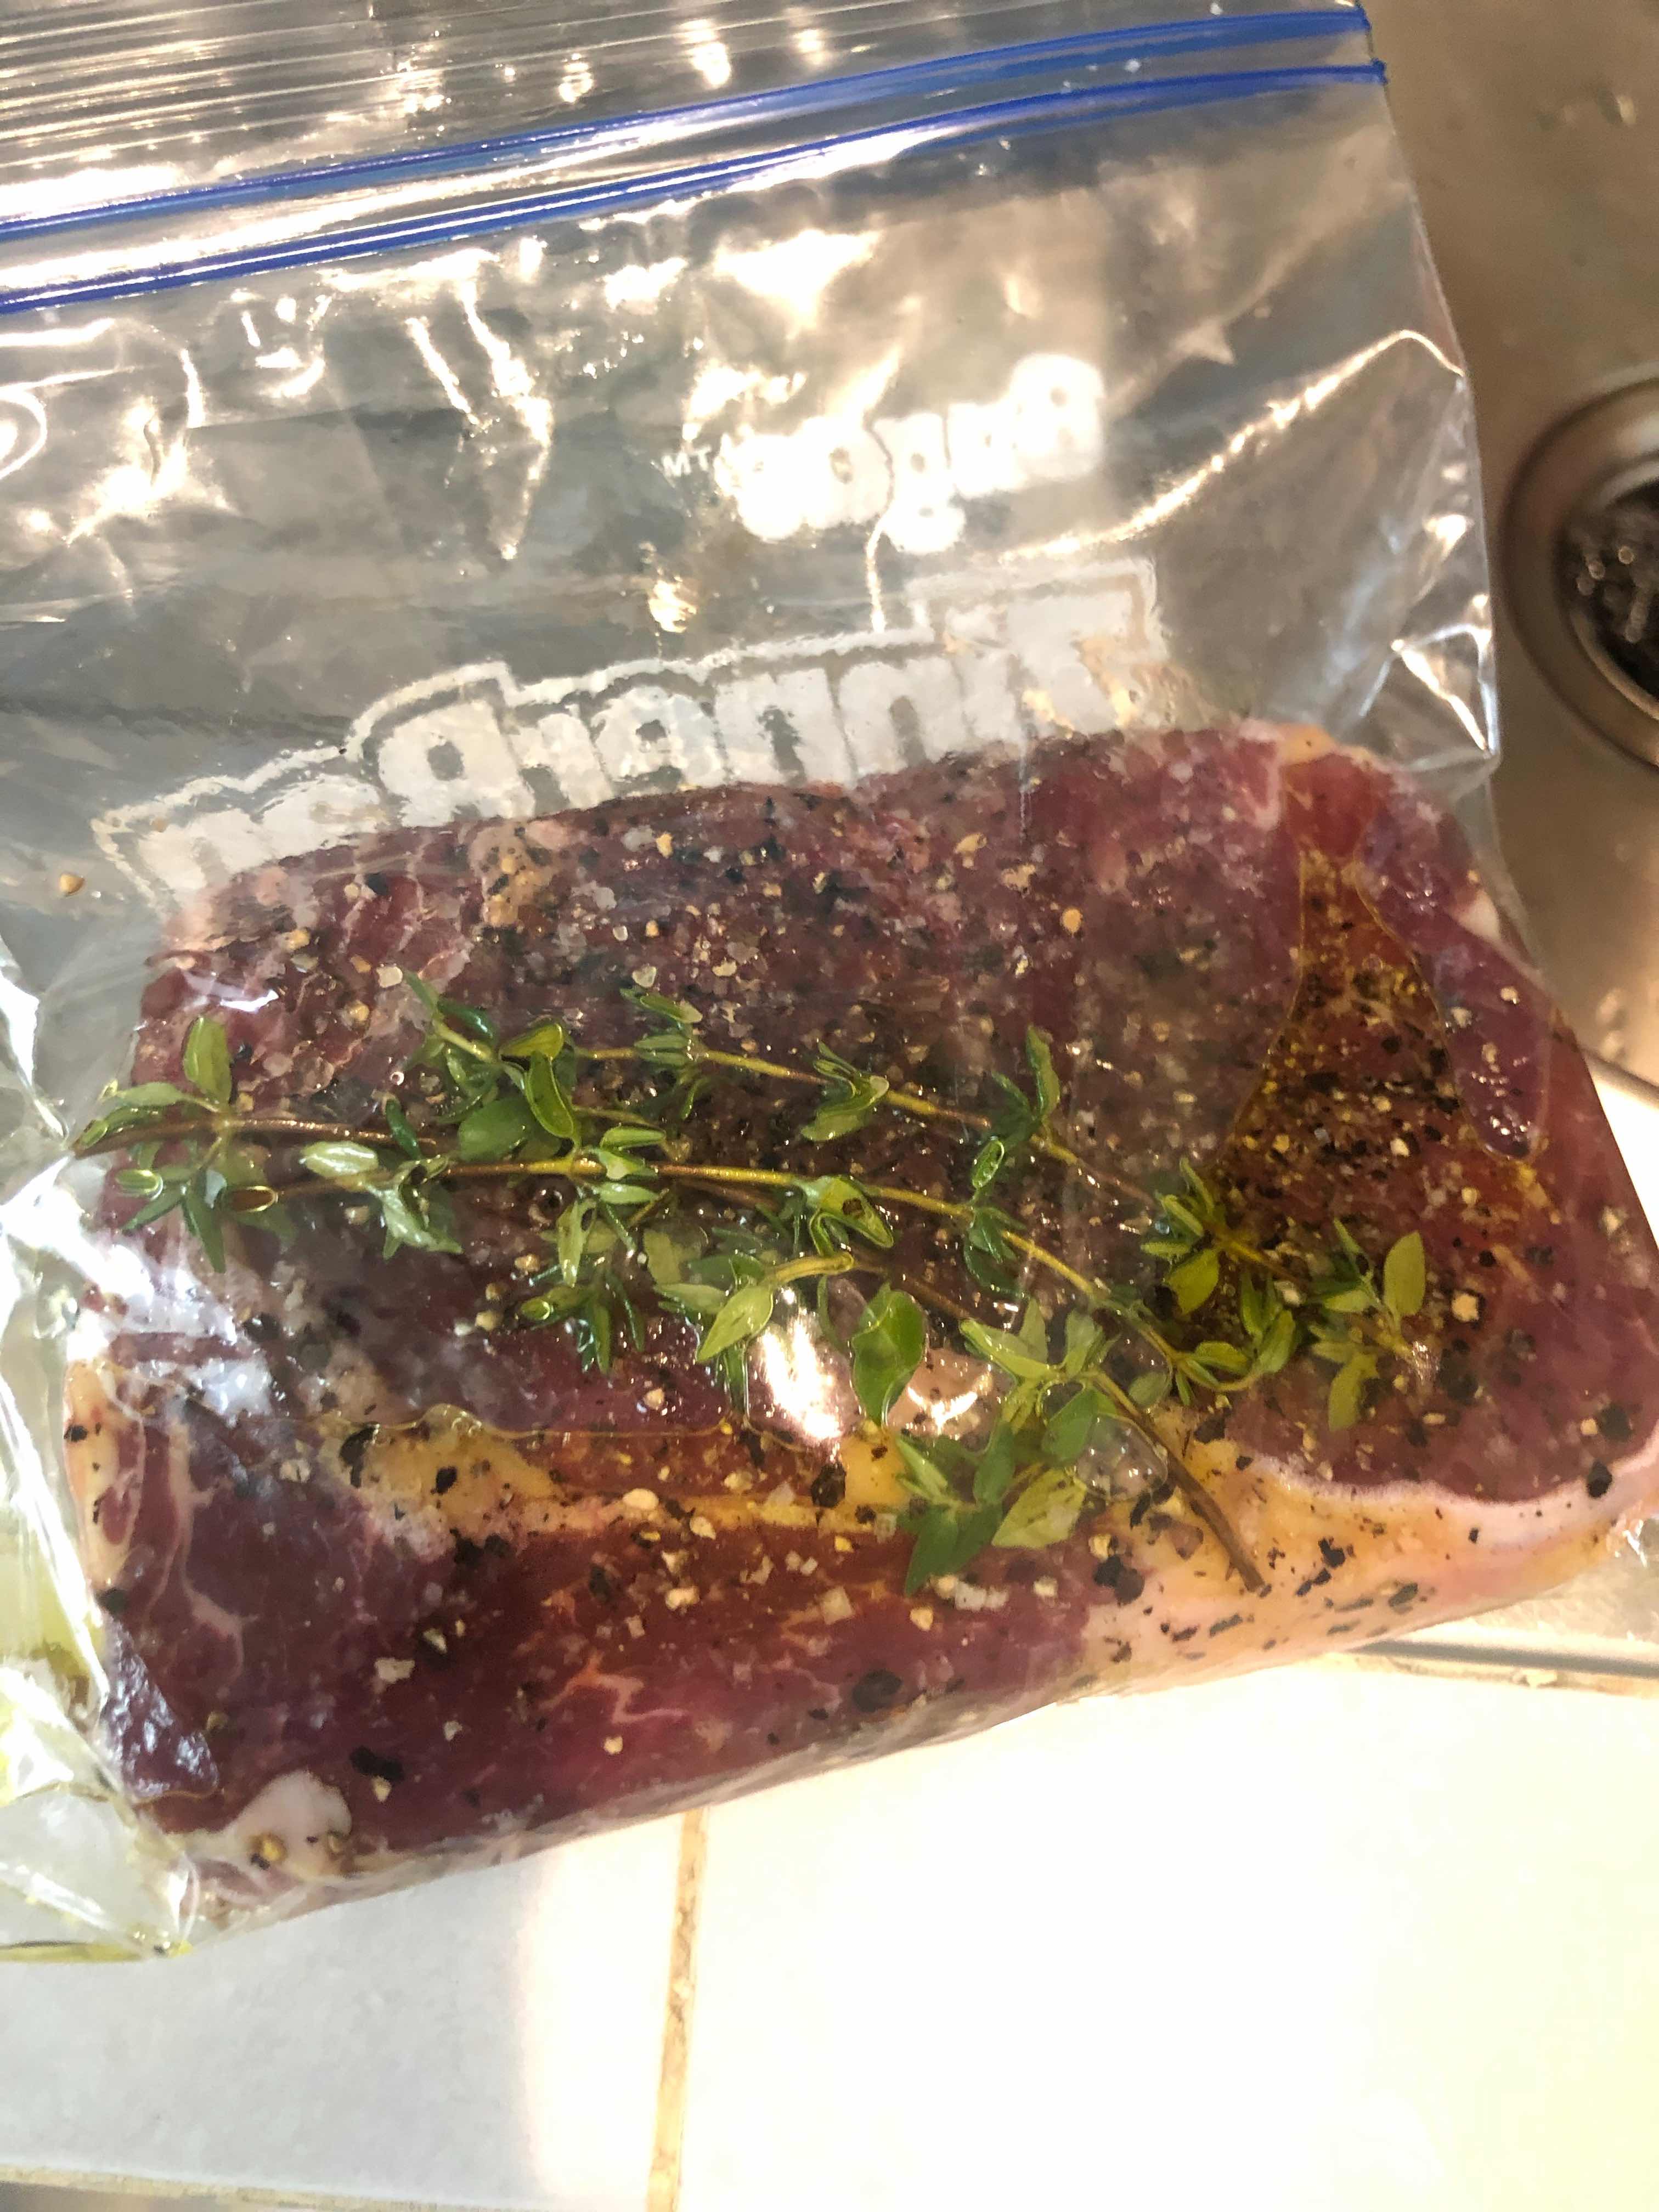 Steak in a bag